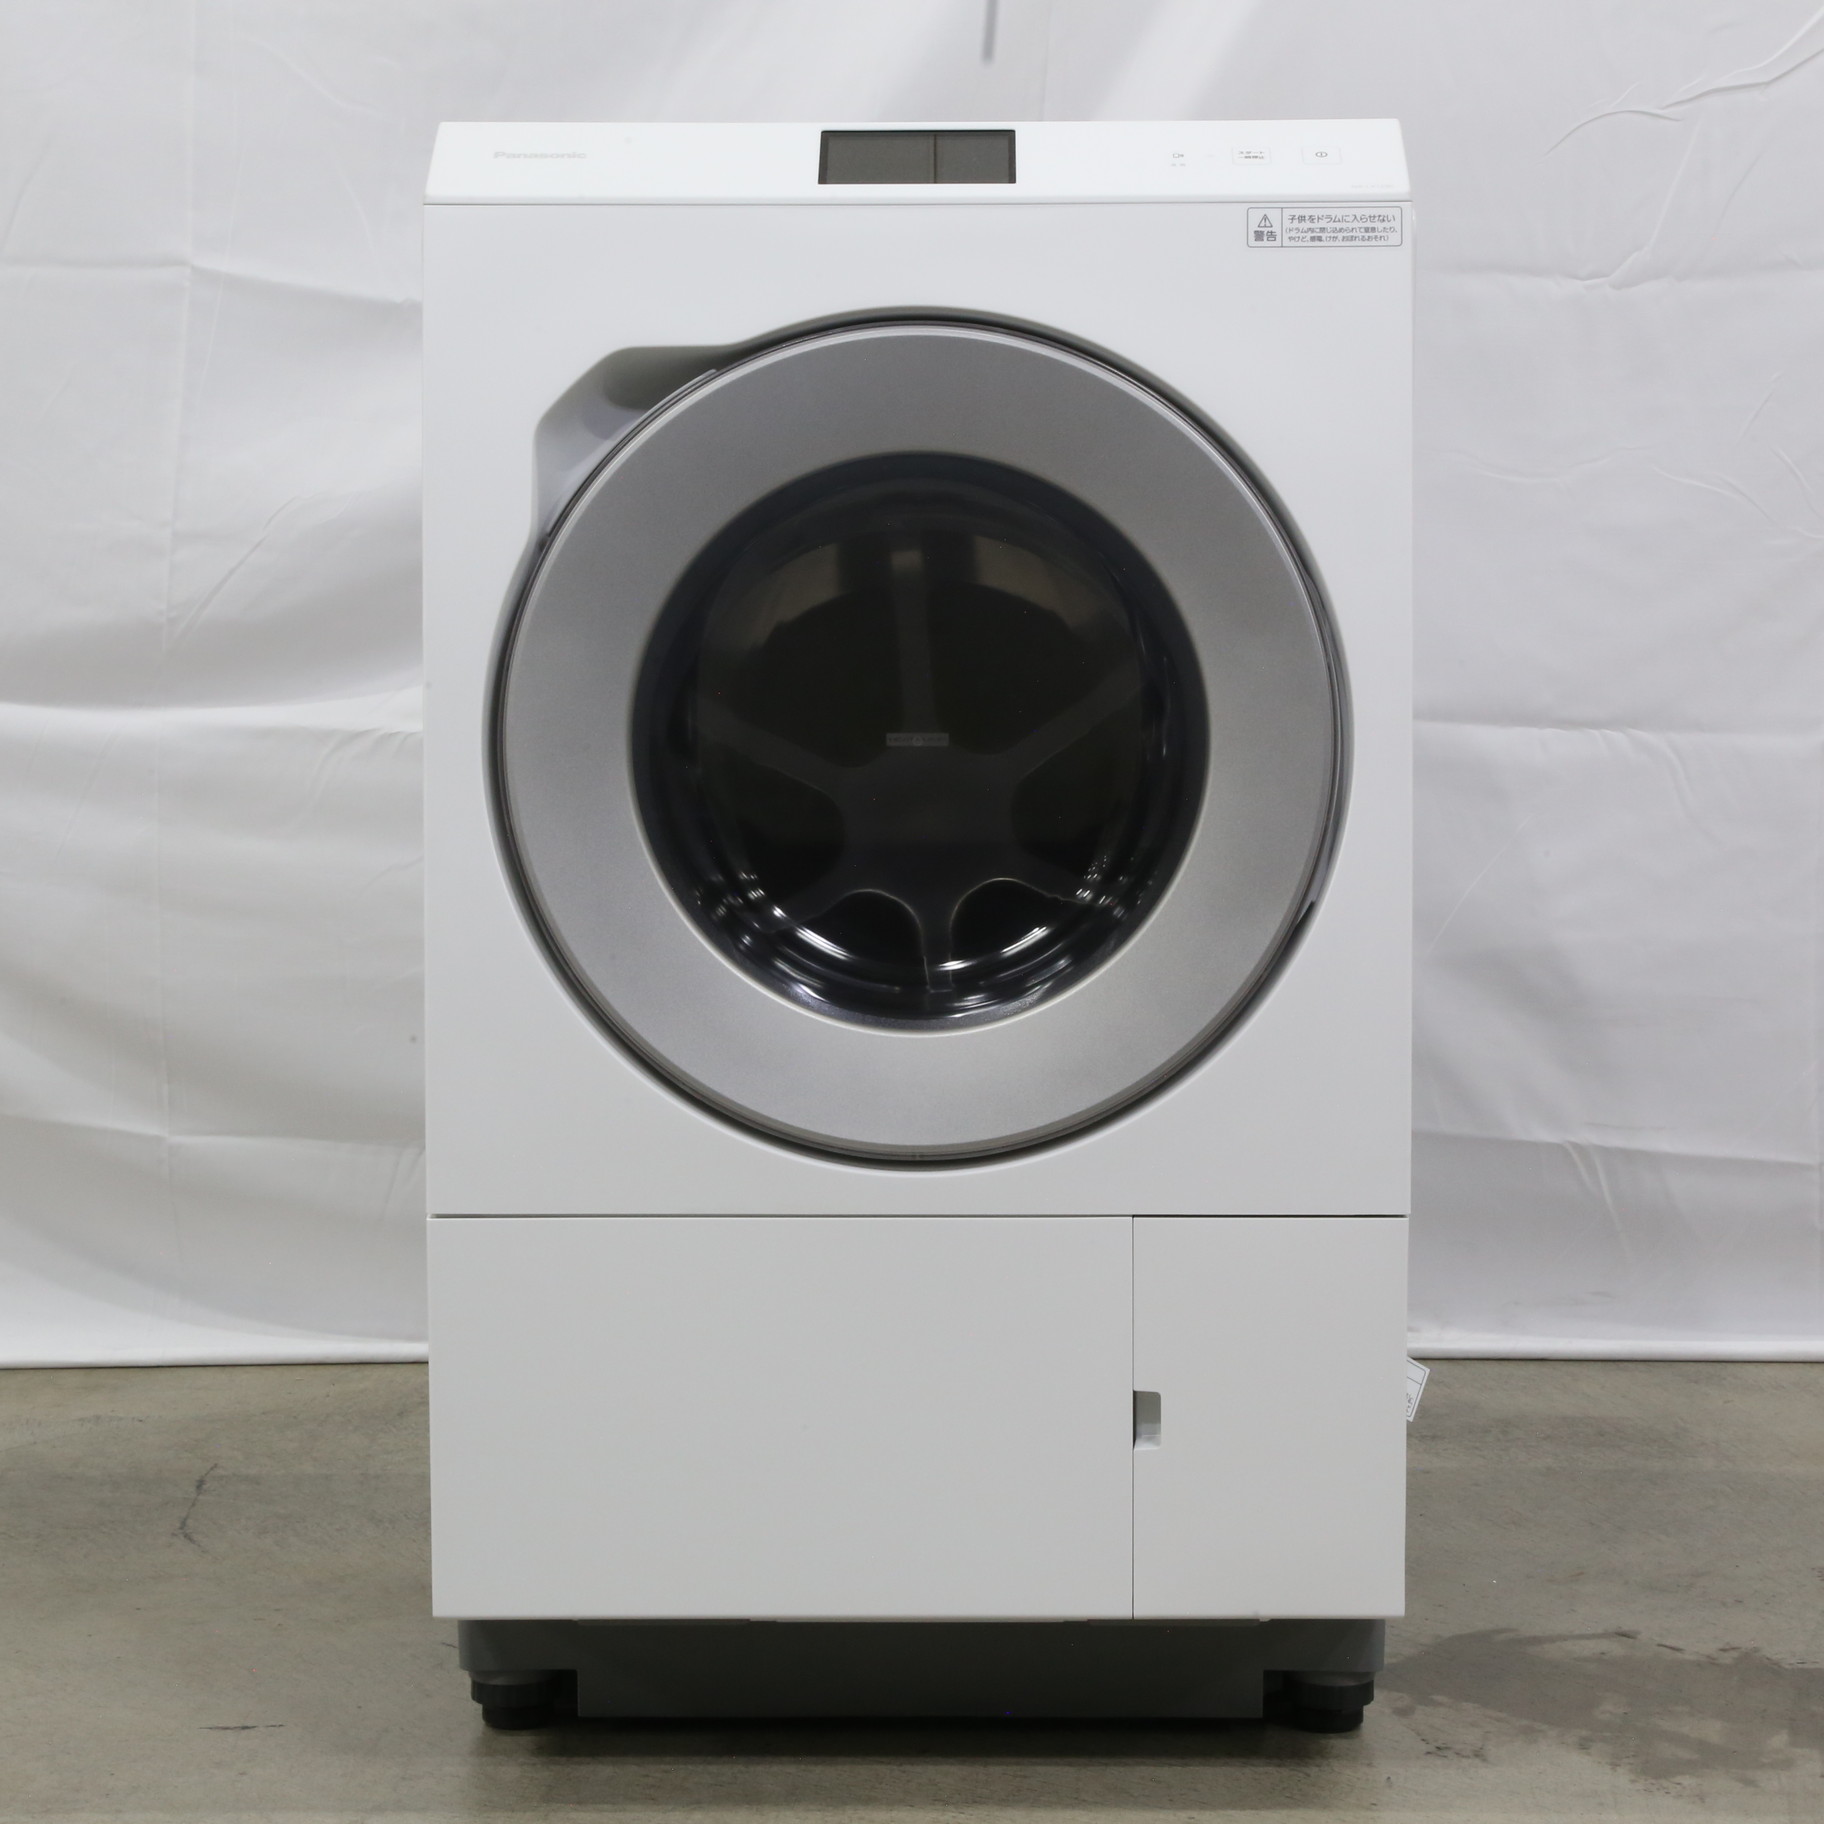 パナソニックドラム式洗濯乾燥機NA-VR5500Lお譲りします - 生活家電